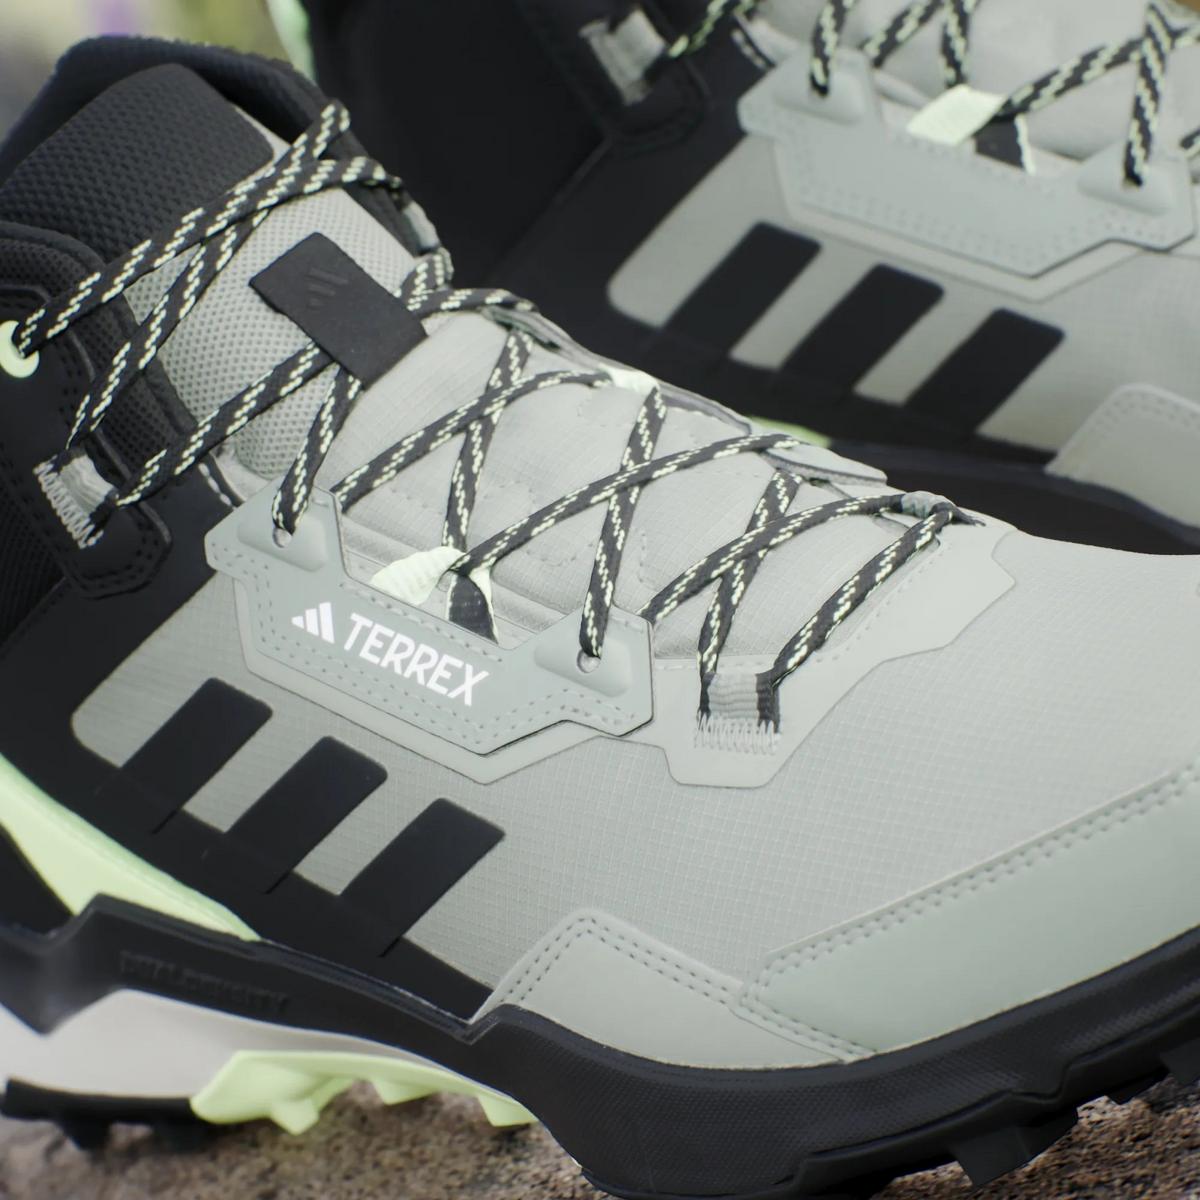 Adidas Terrex Men's Terrex AX4 Mid Gore-Tex Hiking Shoes - Green